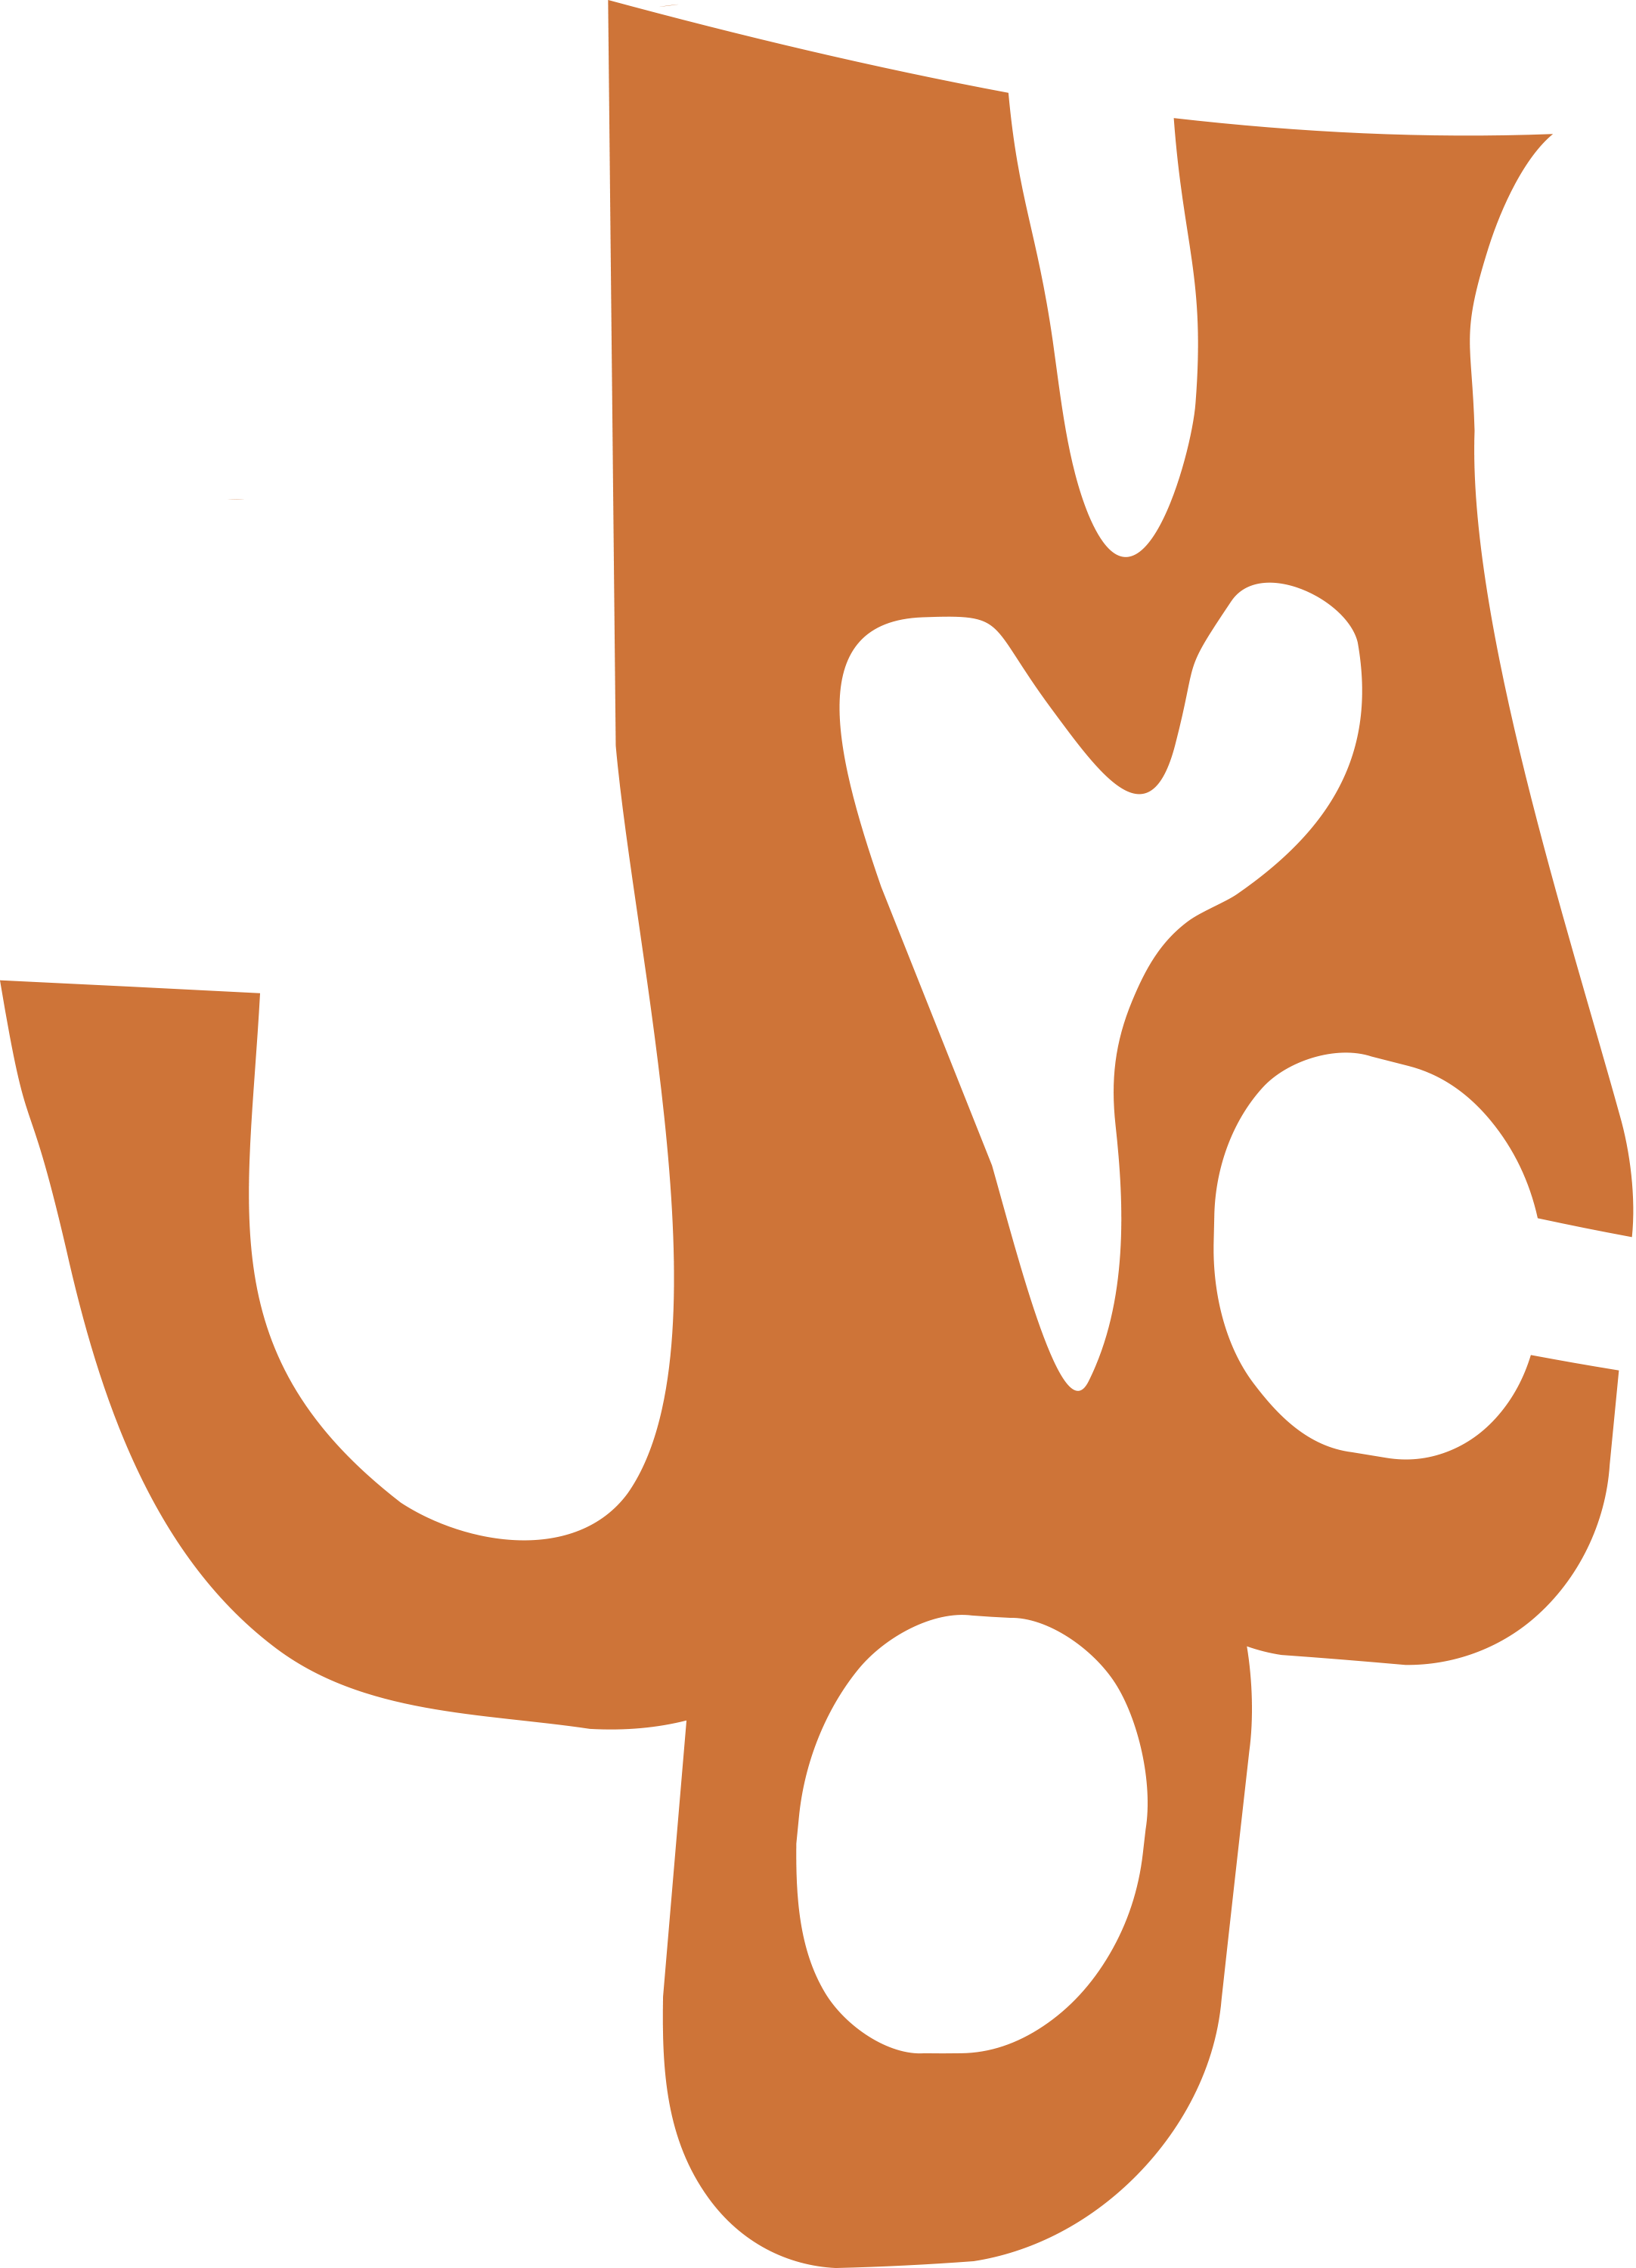 Urban Magnet Co logo in orange. 